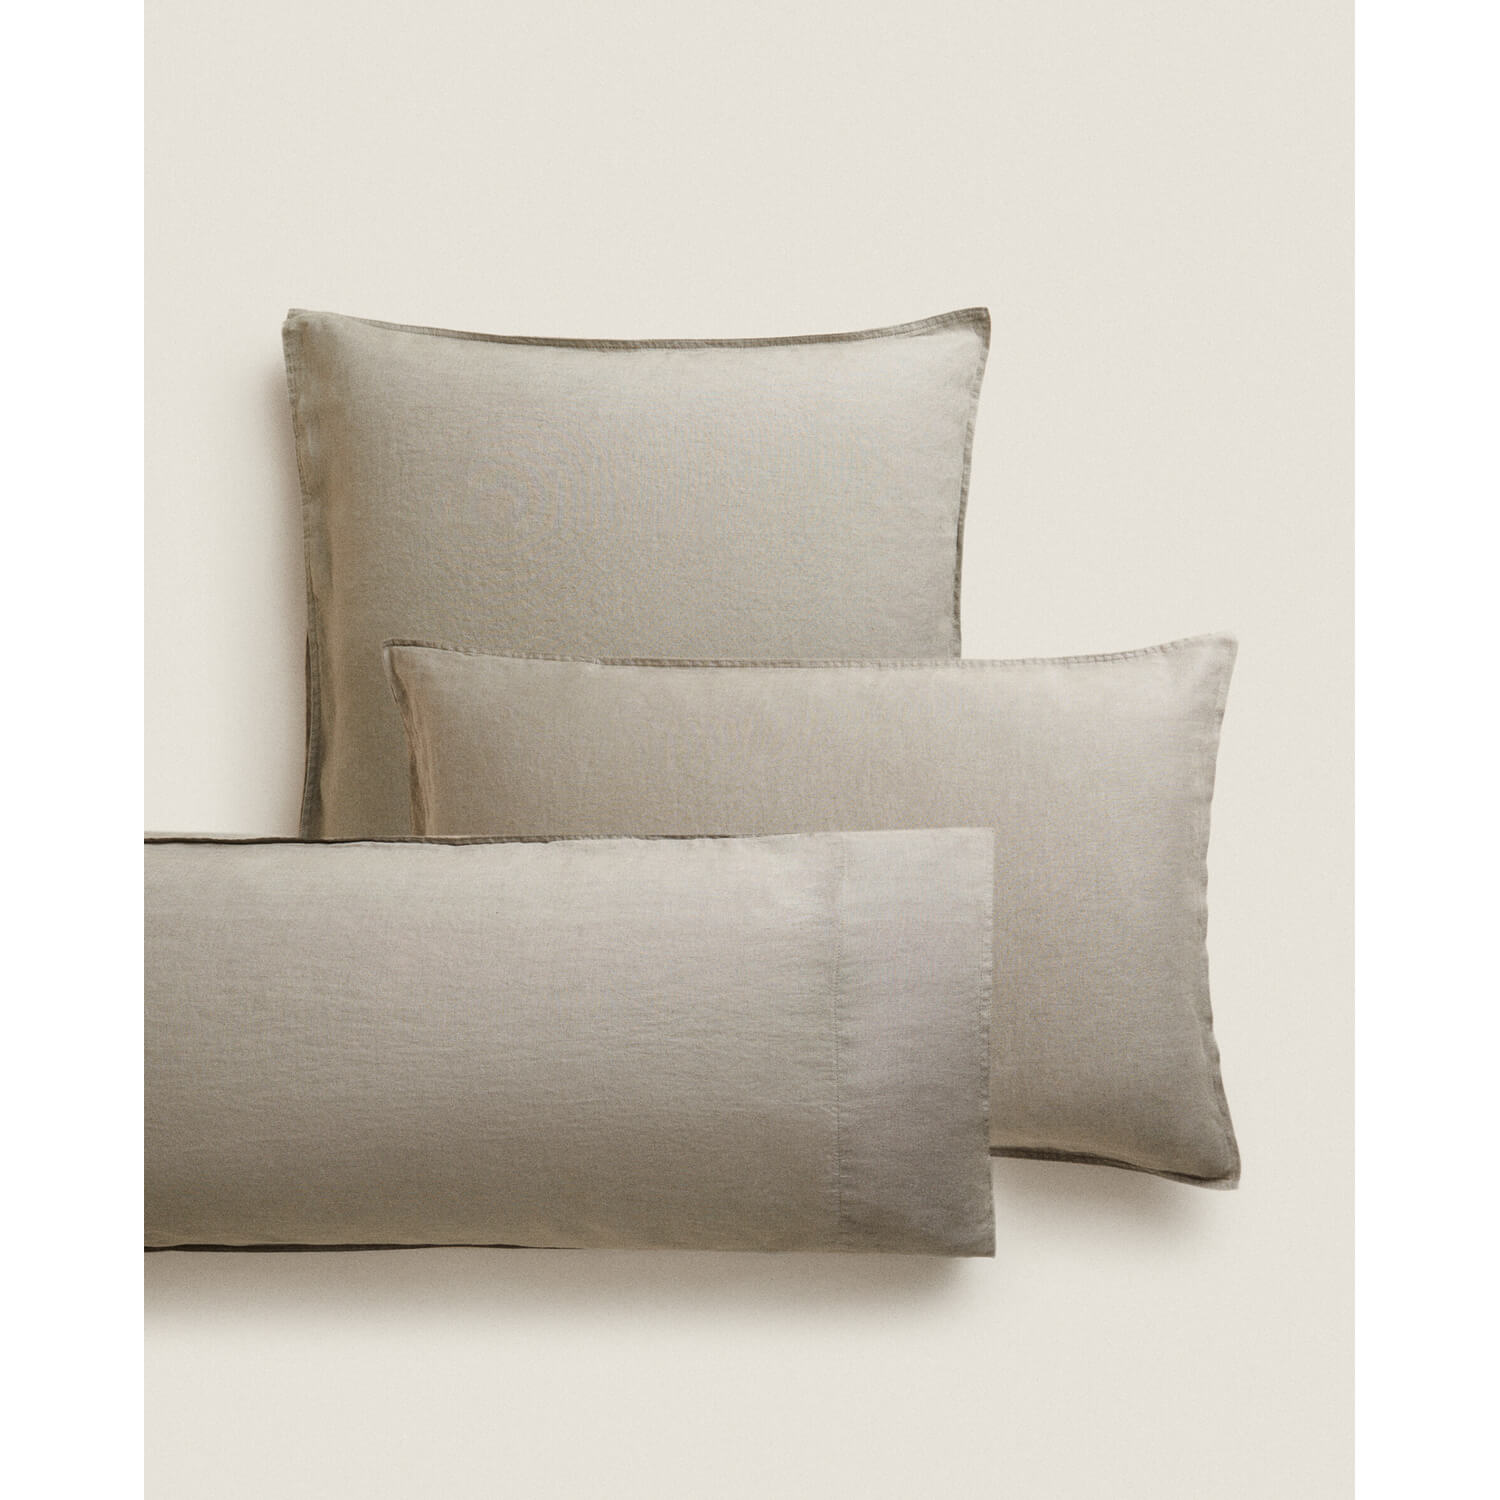 Наволочка Zara Home Washed Linen 140 г/м², серый наволочка однотонная на подушку или валик из стираного льна 50 x 70 см зеленый